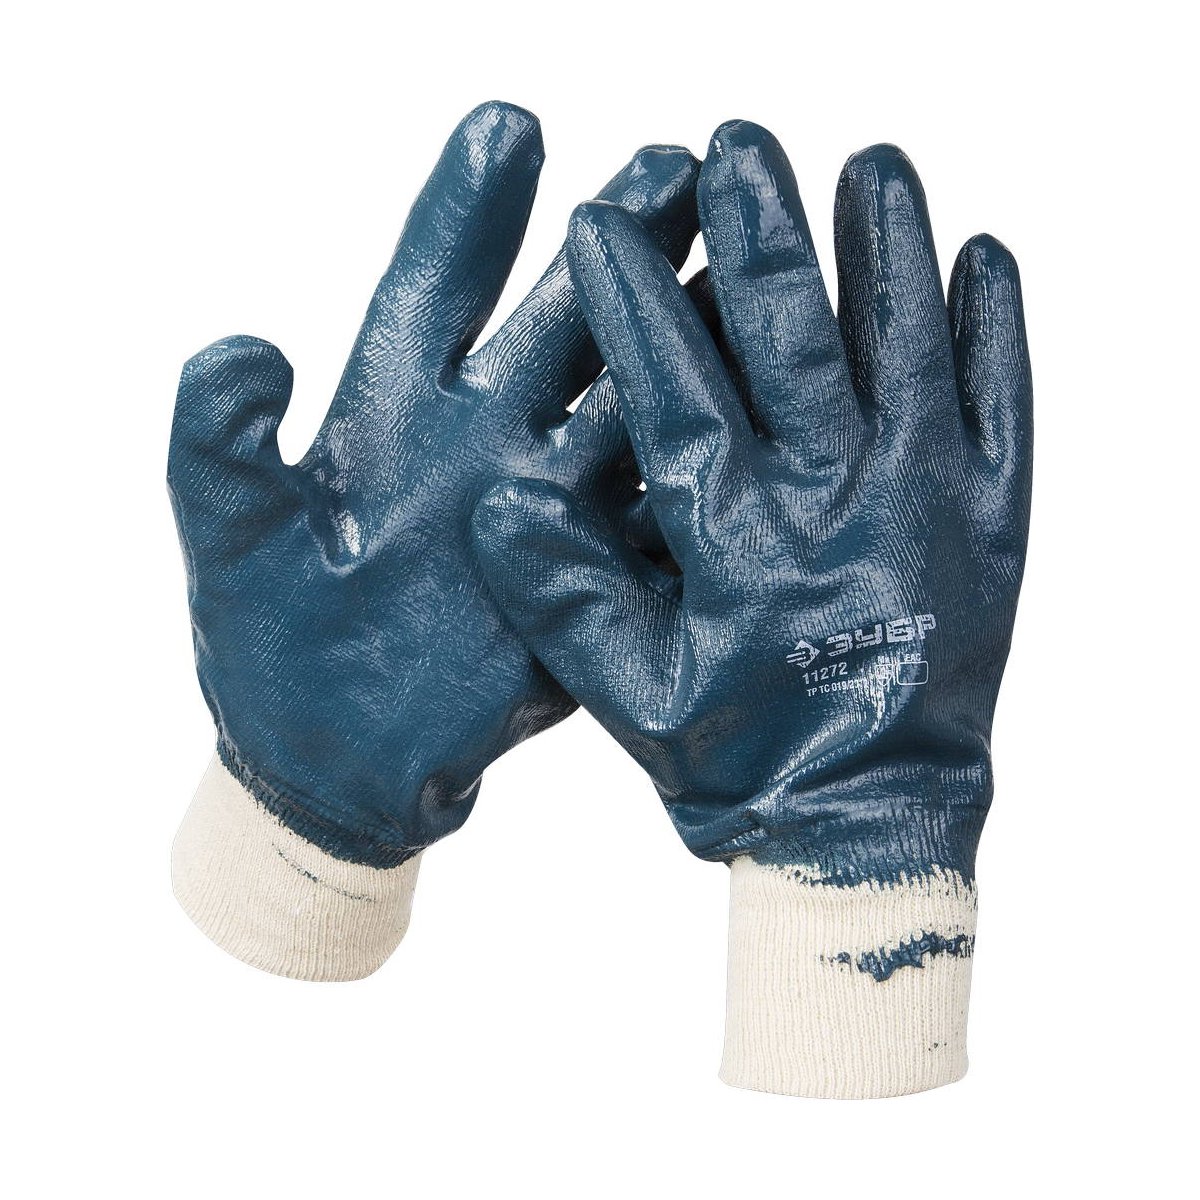 Прочные перчатки ЗУБР с манжетой, с нитриловым покрытием, масло-бензостойкие, износостойкие, L(9), HARD, ПРОФЕССИОНАЛ, (11272-L)Купить